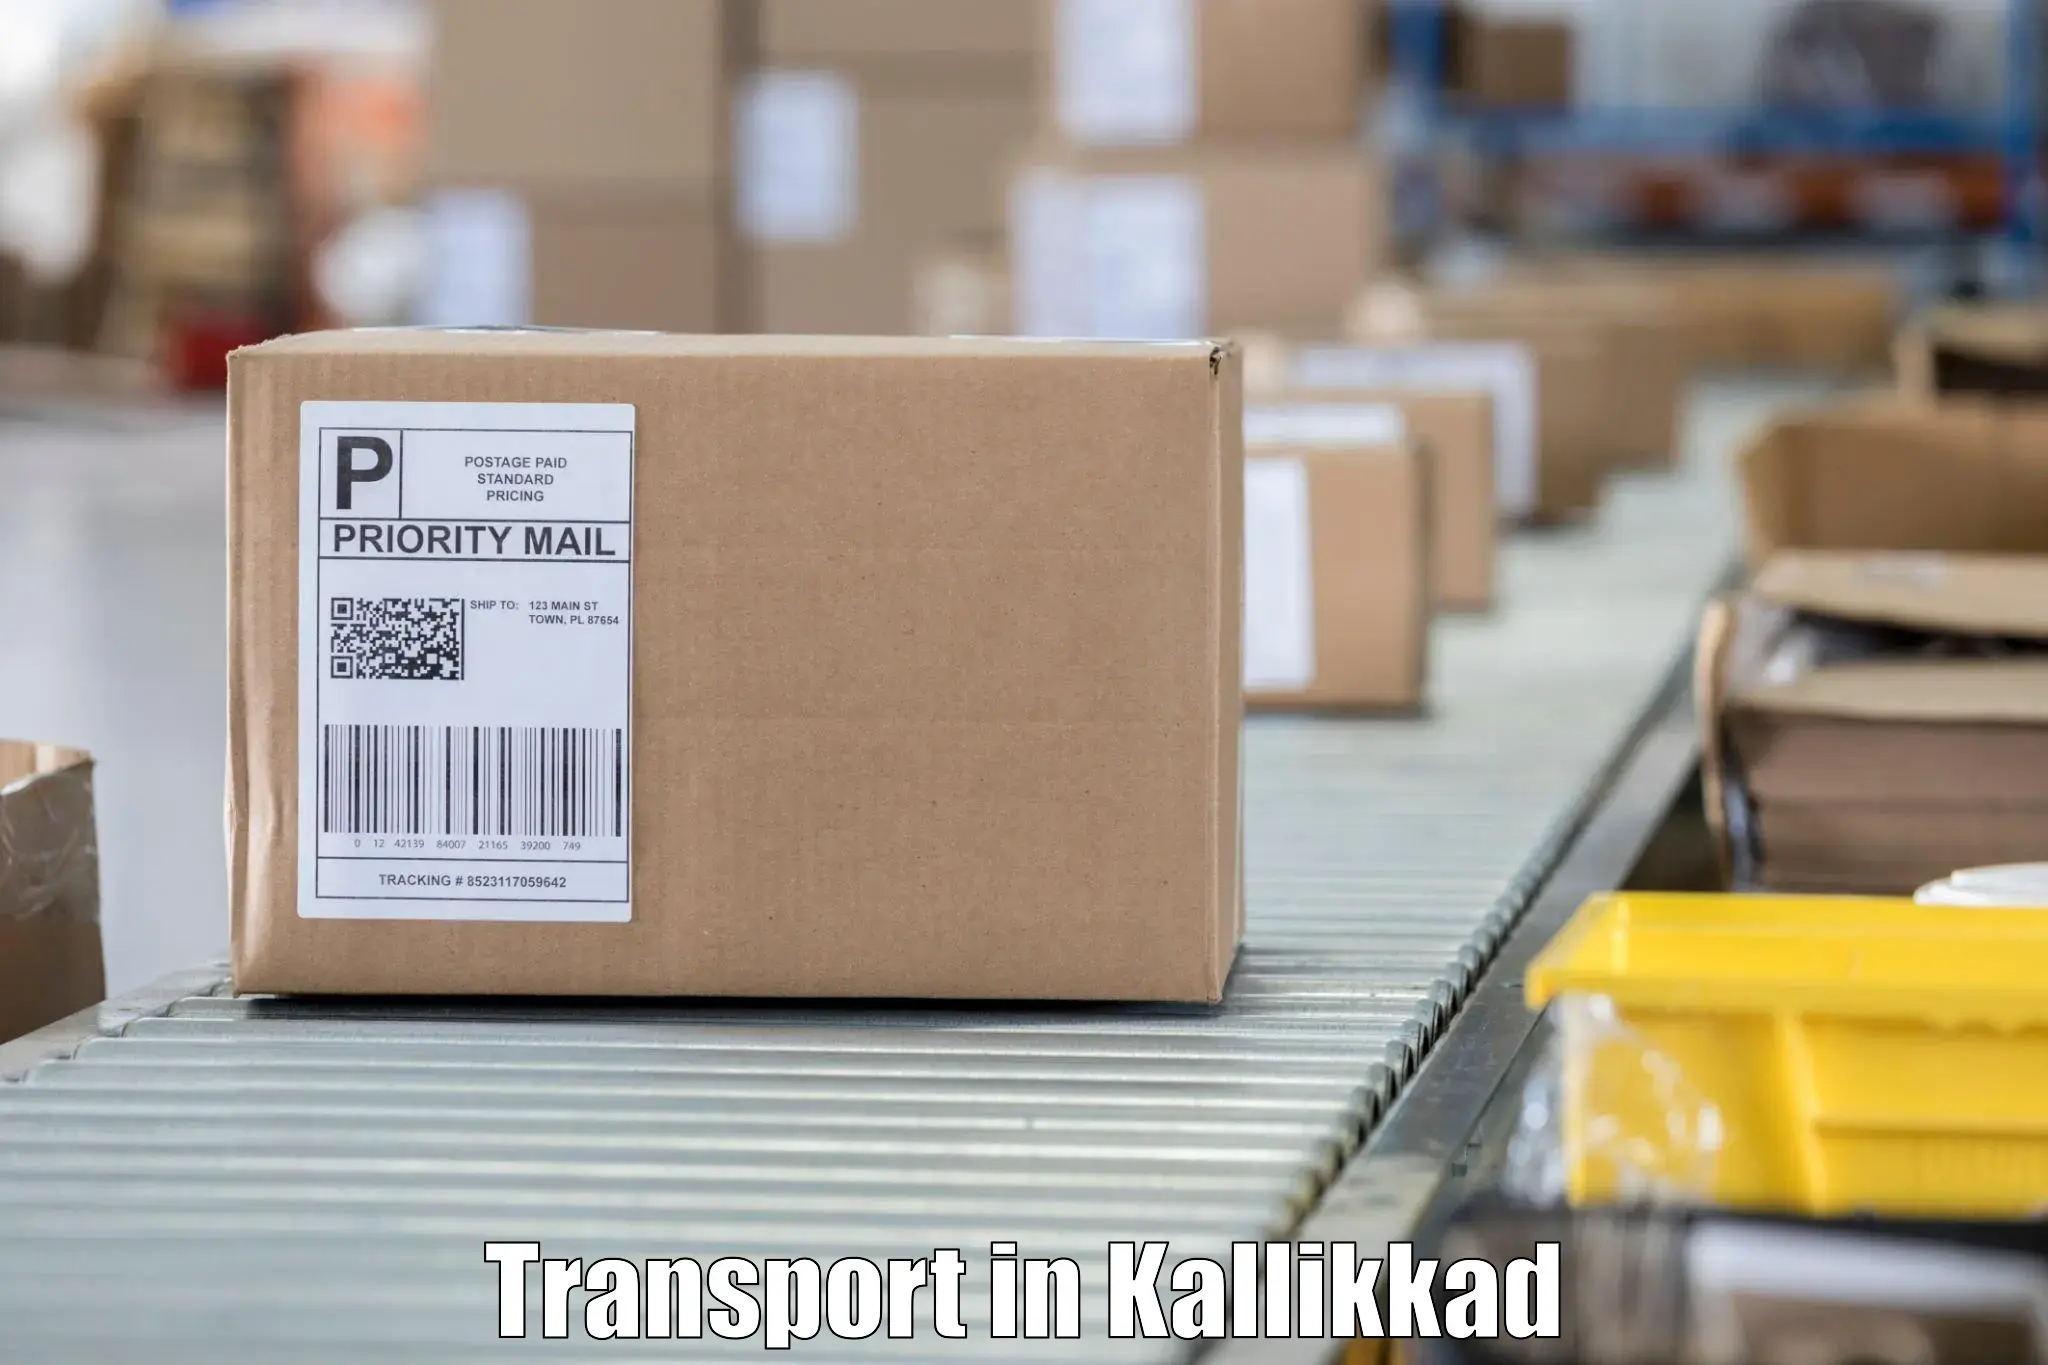 Vehicle transport services in Kallikkad